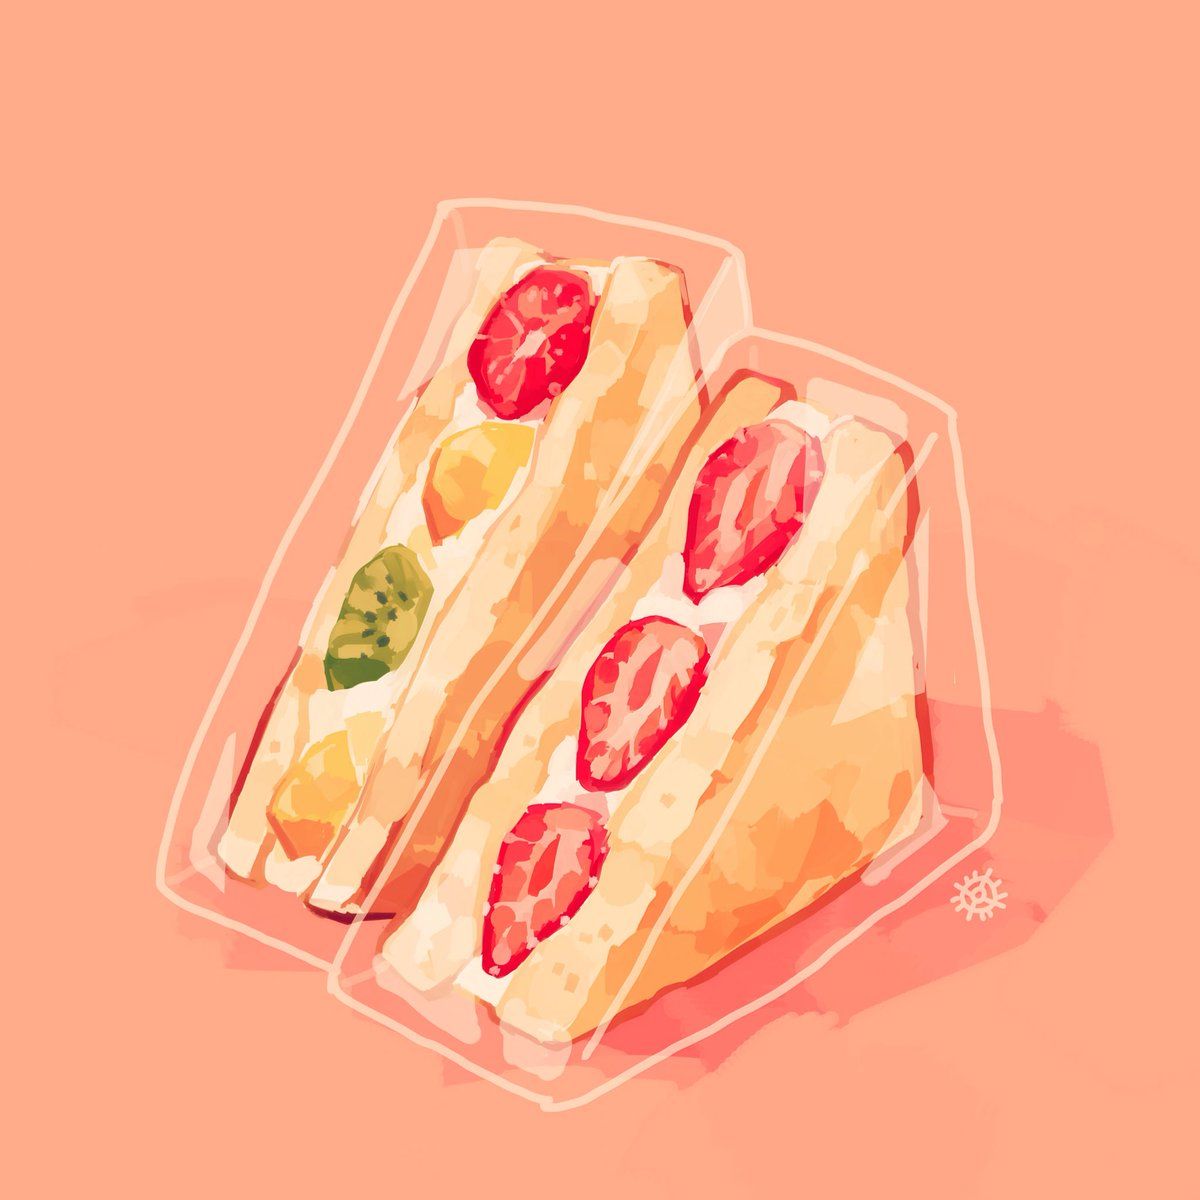 reii ♜ on. Food illustrations, Food painting, Watercolor